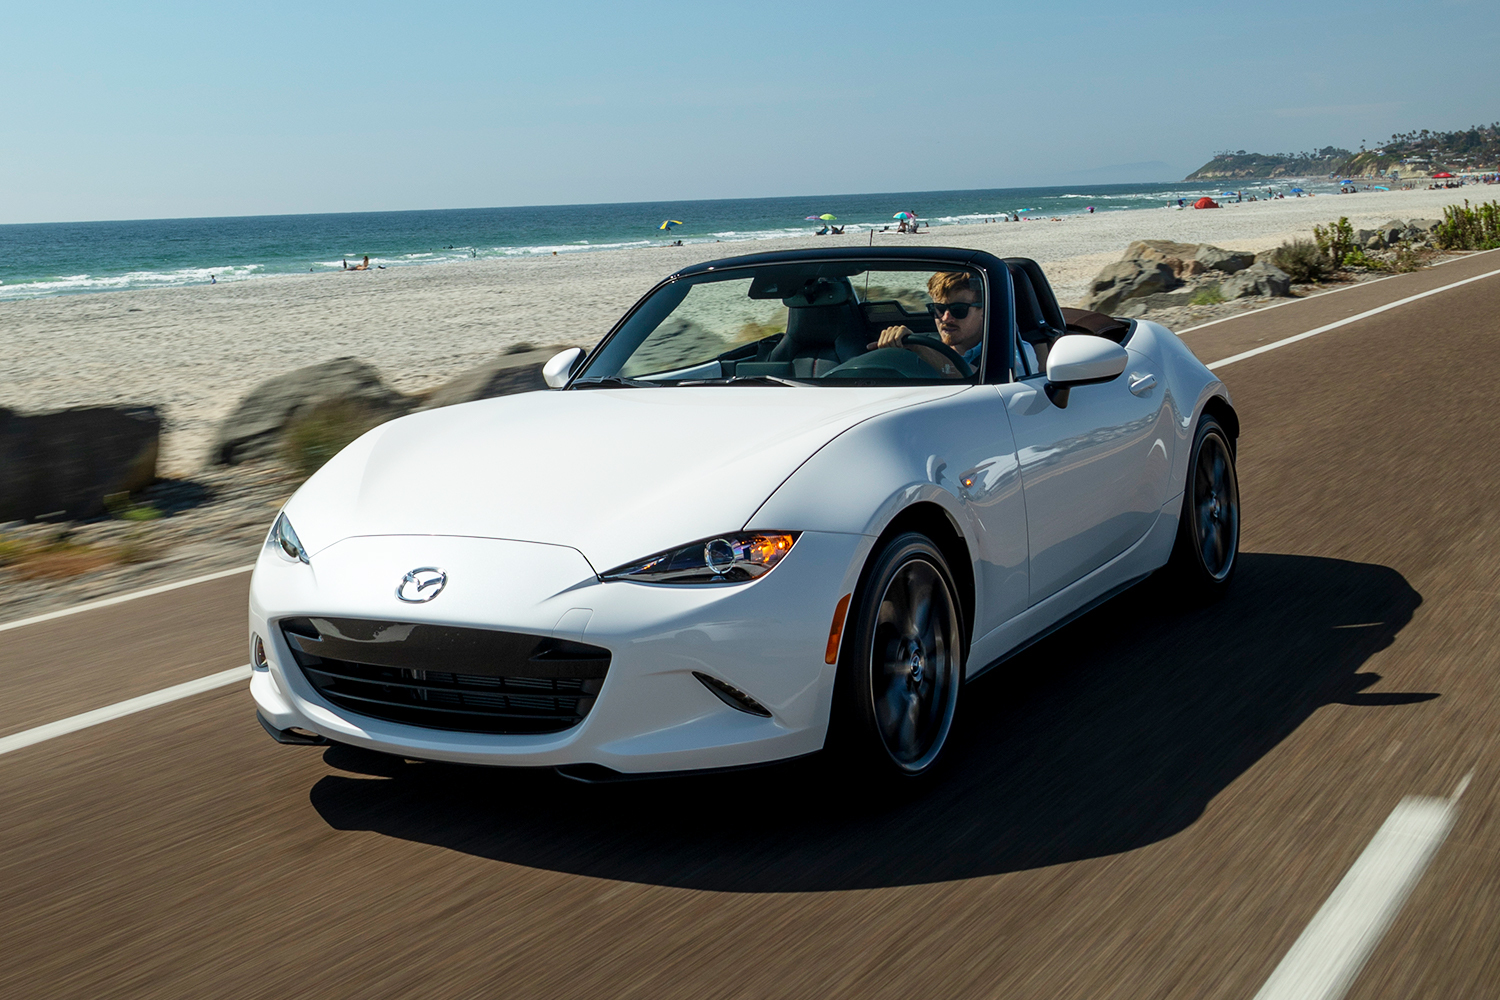 A man driving a white Mazda MX-5 Miata convertible next to an ocean beach